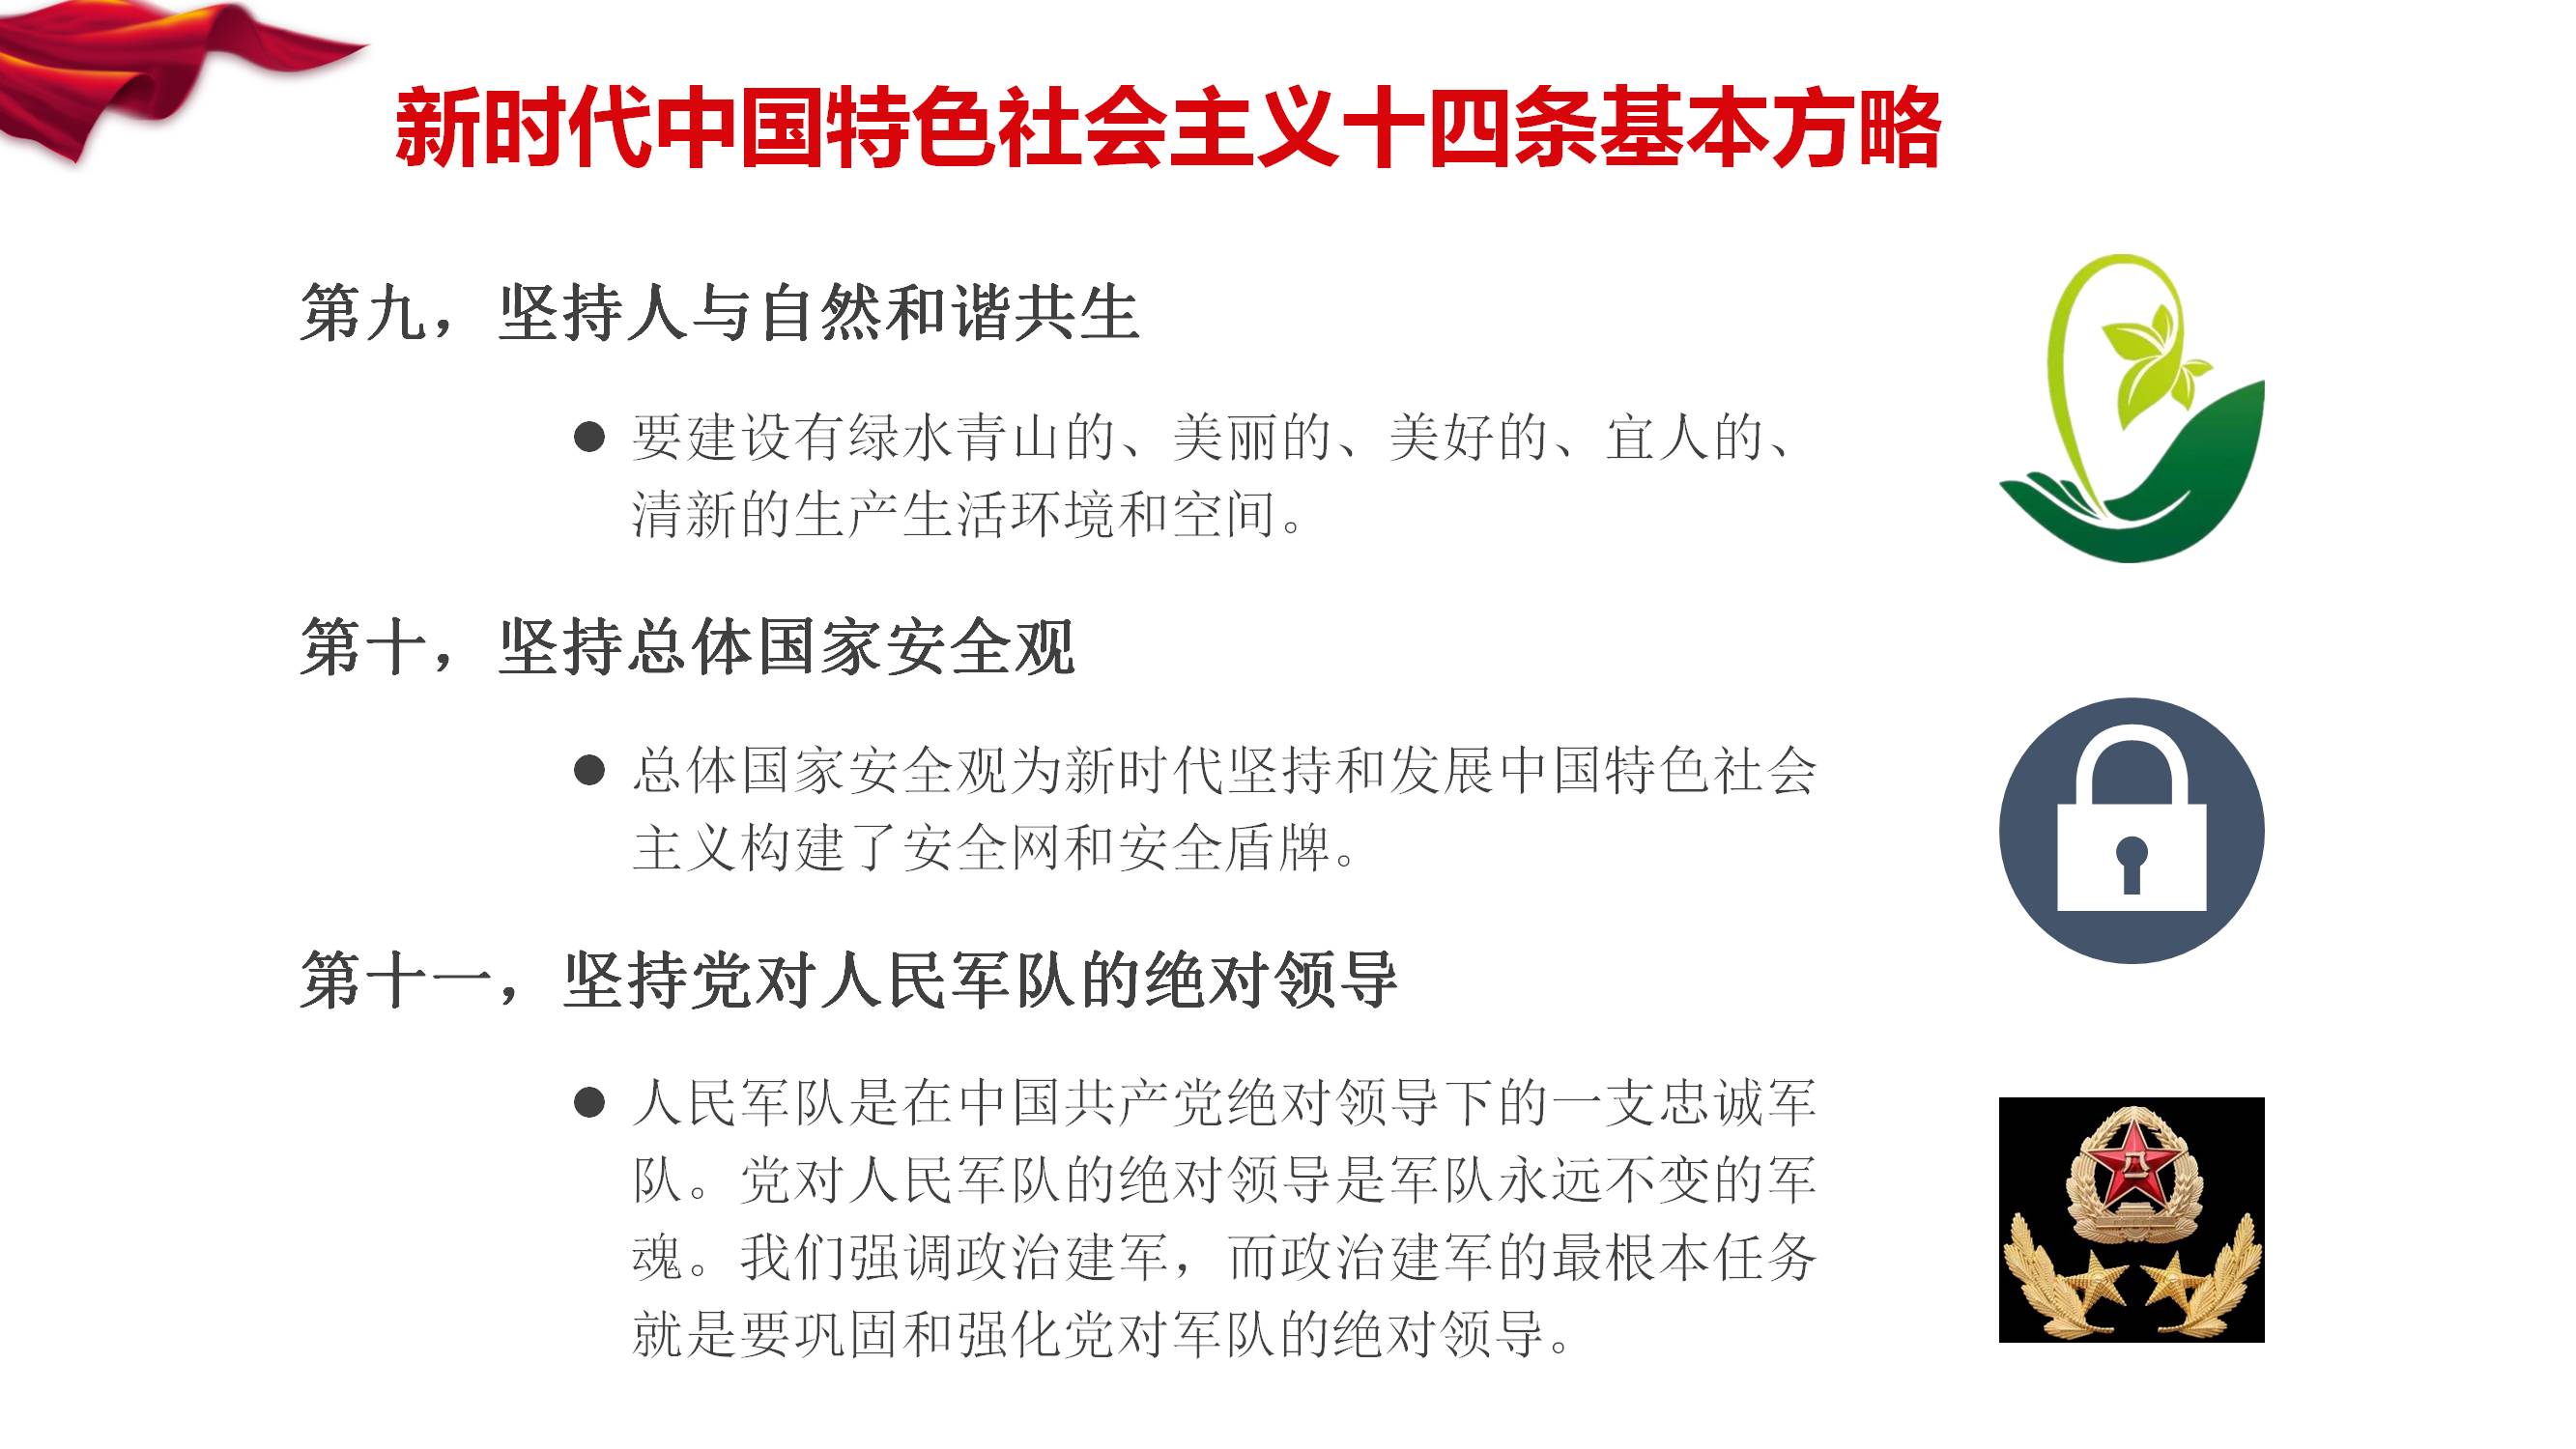 [PPT]中国兵器装备集团公司中国兵器装备研究院《奋力开创 新时代中国特色社会主义  美好未来》